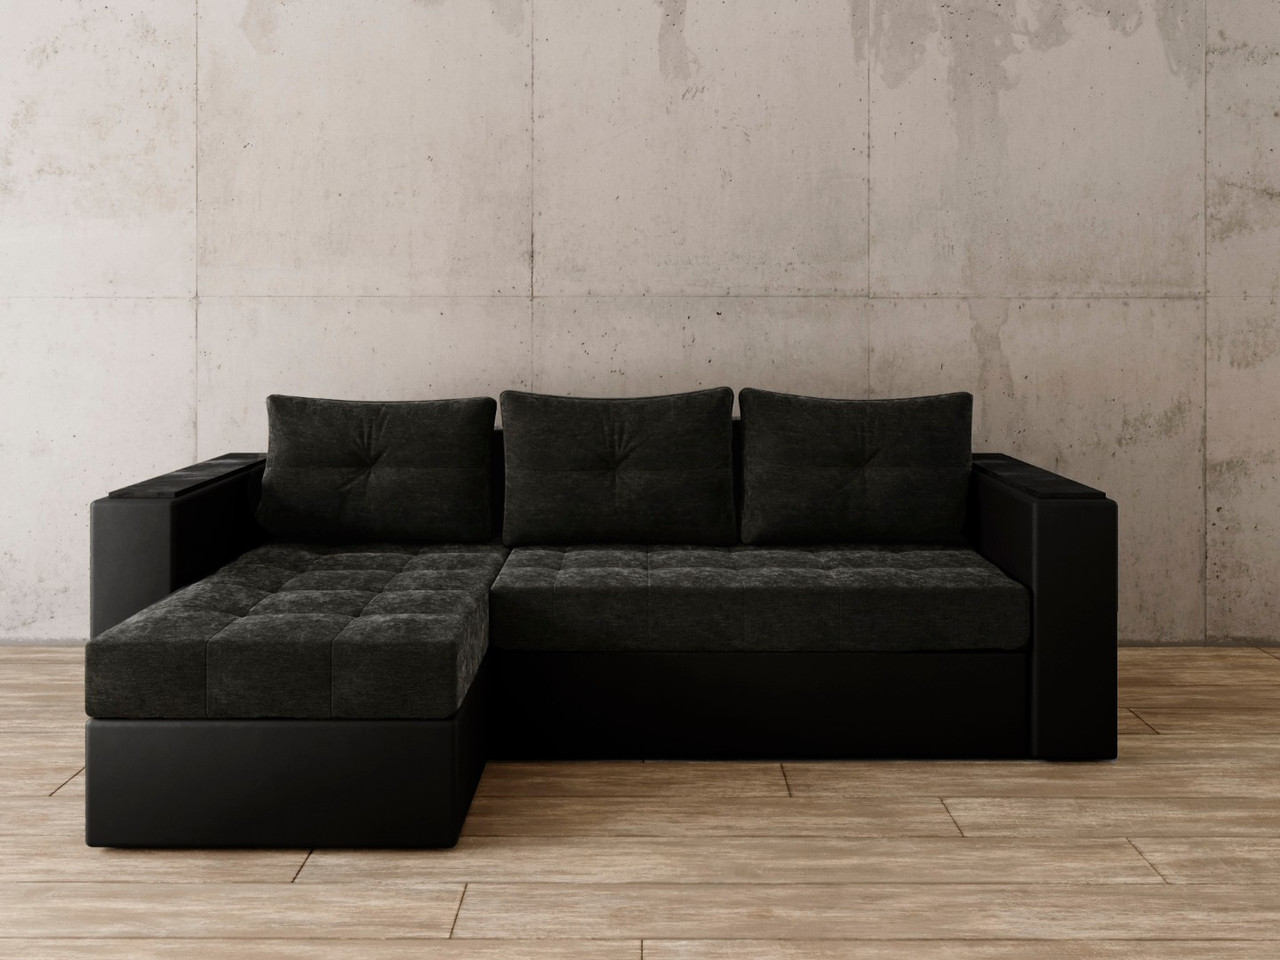 Угловой диван Константин с декором чёрный вельвет/чёрная экокожа